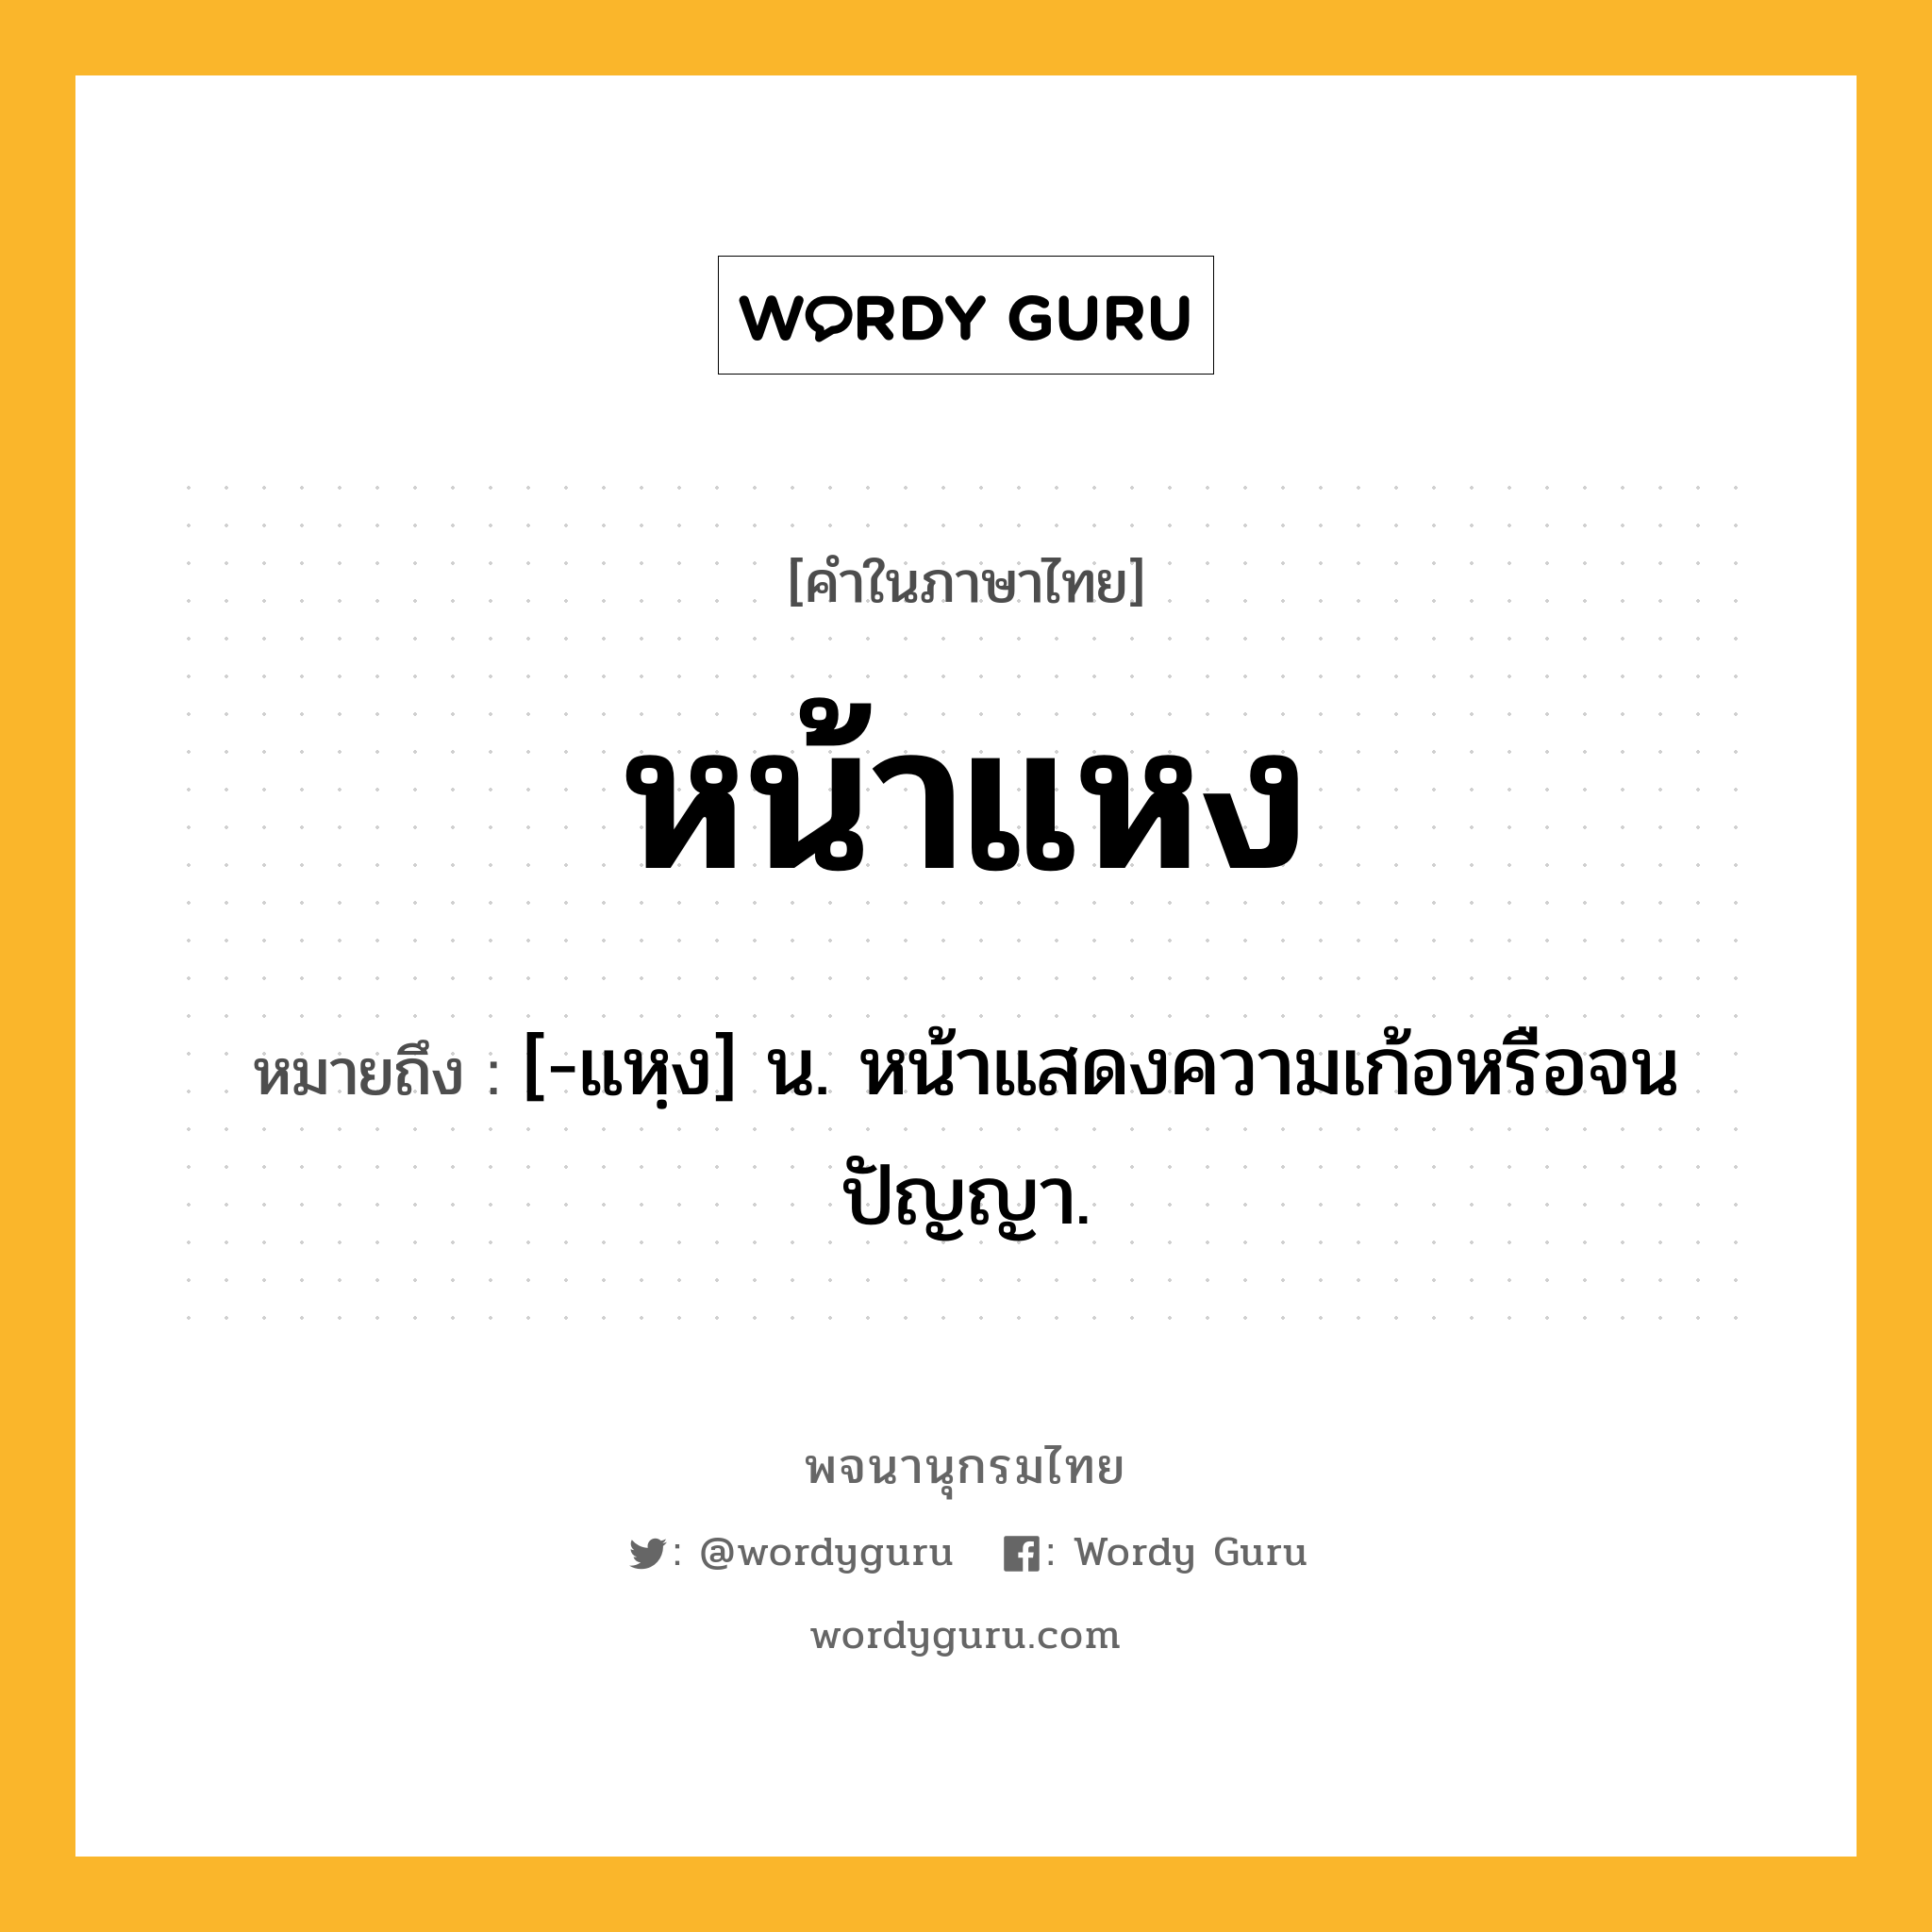 หน้าแหง หมายถึงอะไร?, คำในภาษาไทย หน้าแหง หมายถึง [-แหฺง] น. หน้าแสดงความเก้อหรือจนปัญญา.